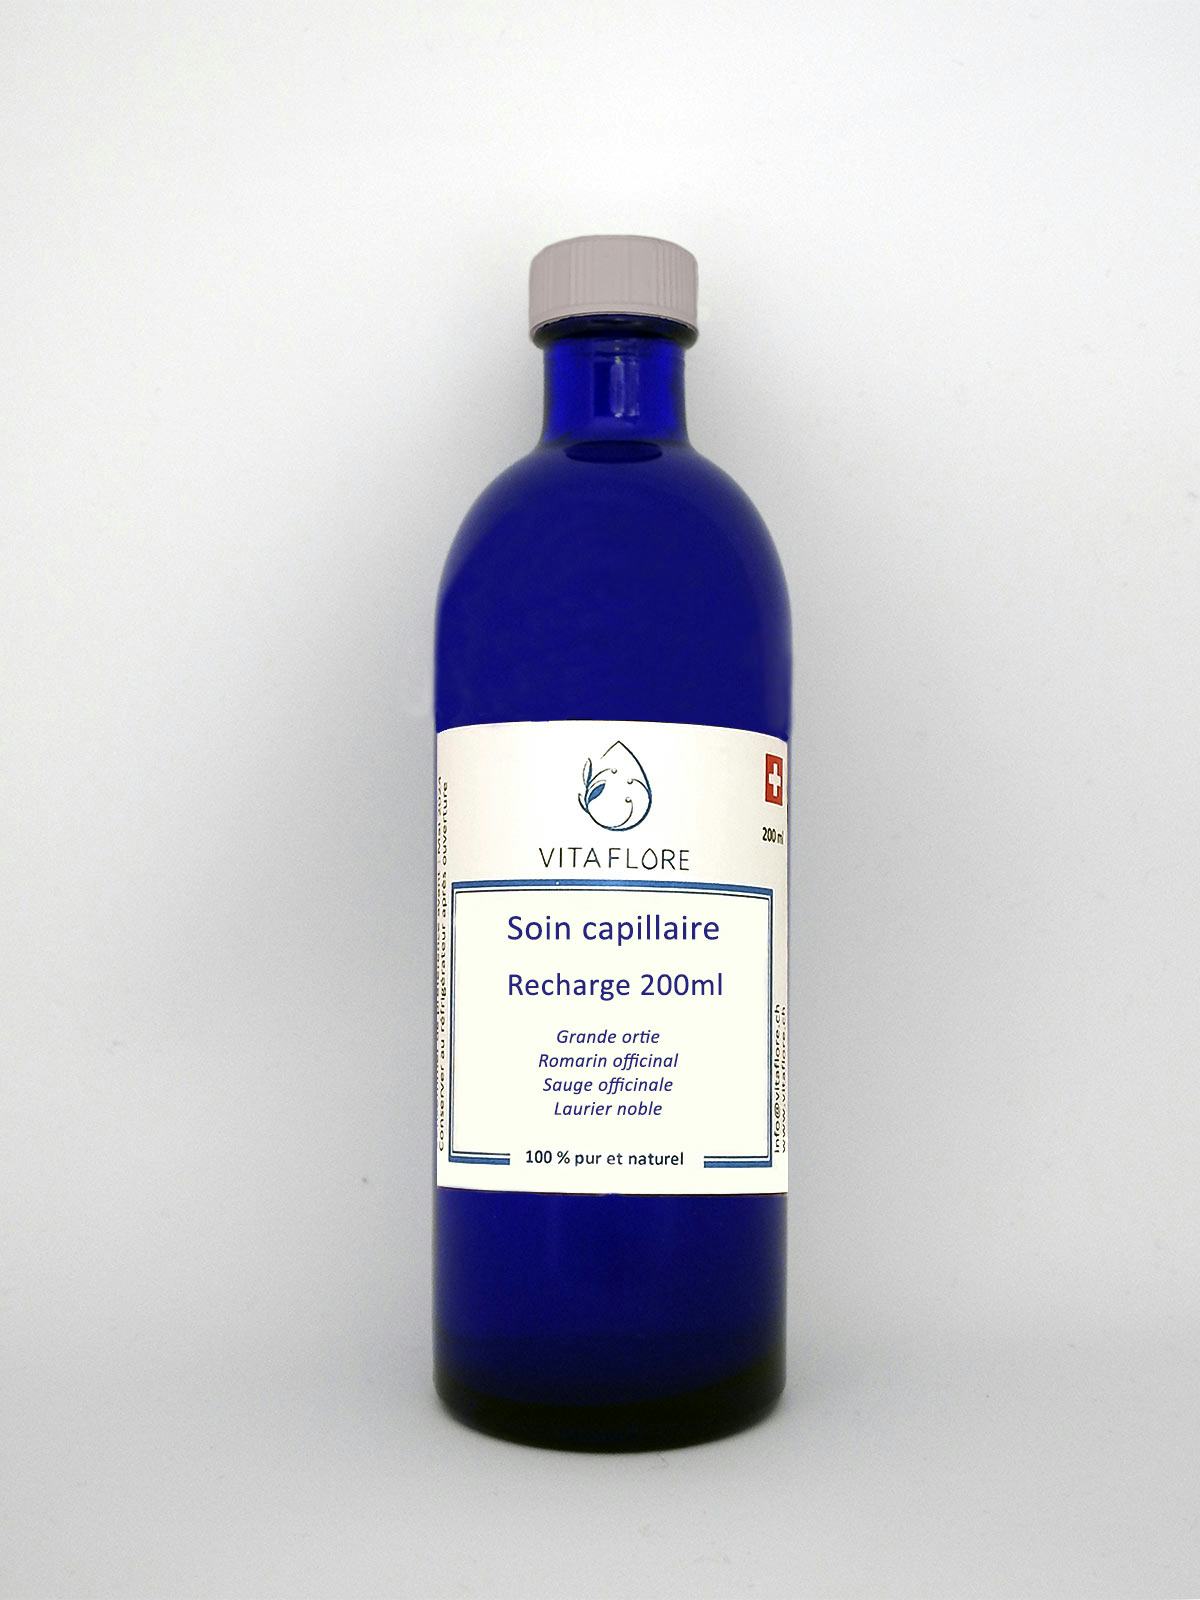 Synergie d’hydrolats – Soin capillaire – recharge 200ml, handwerkliches Produkt für den Direktverkauf in der Schweiz